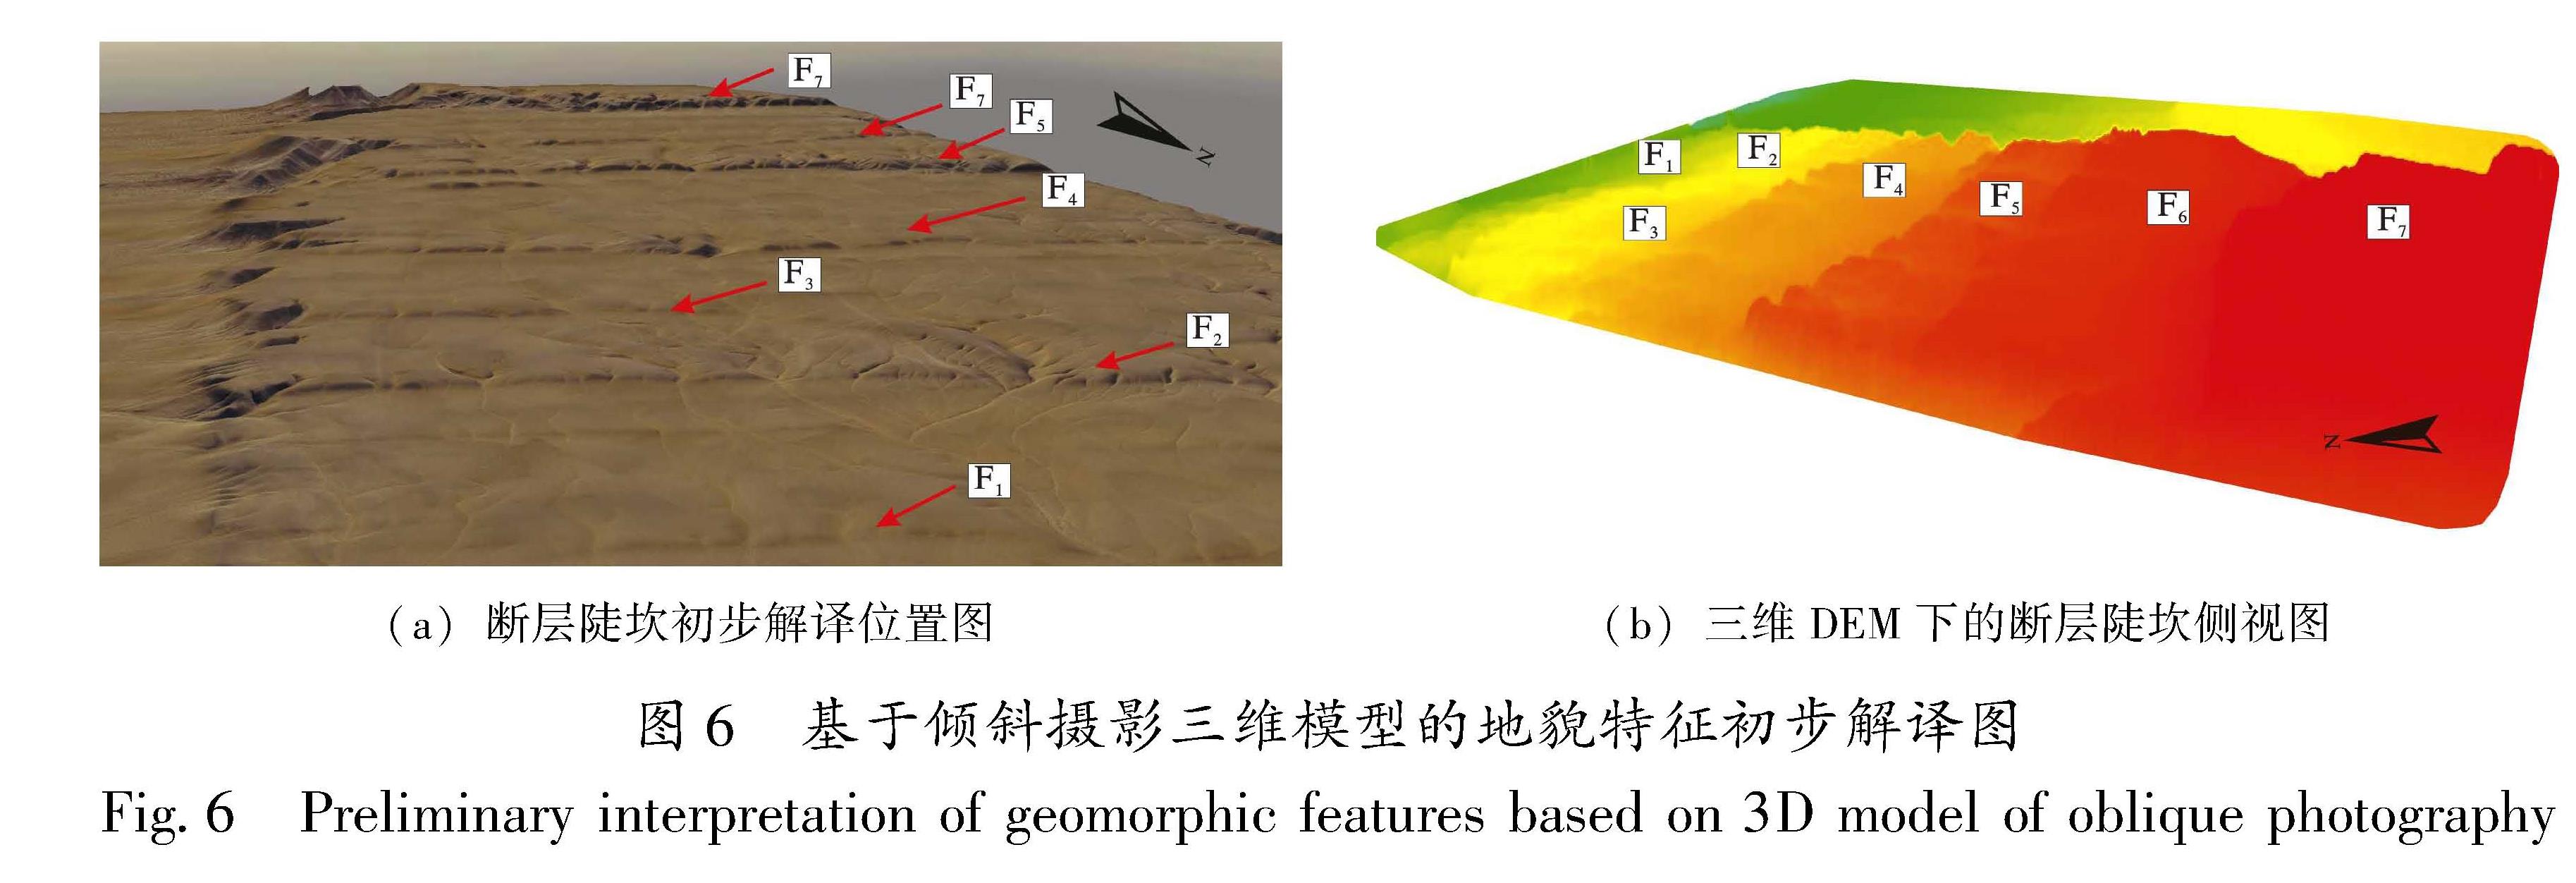 图6 基于倾斜摄影三维模型的地貌特征初步解译图<br/>Fig.6 Preliminary interpretation of geomorphic features based on 3D model of oblique photography